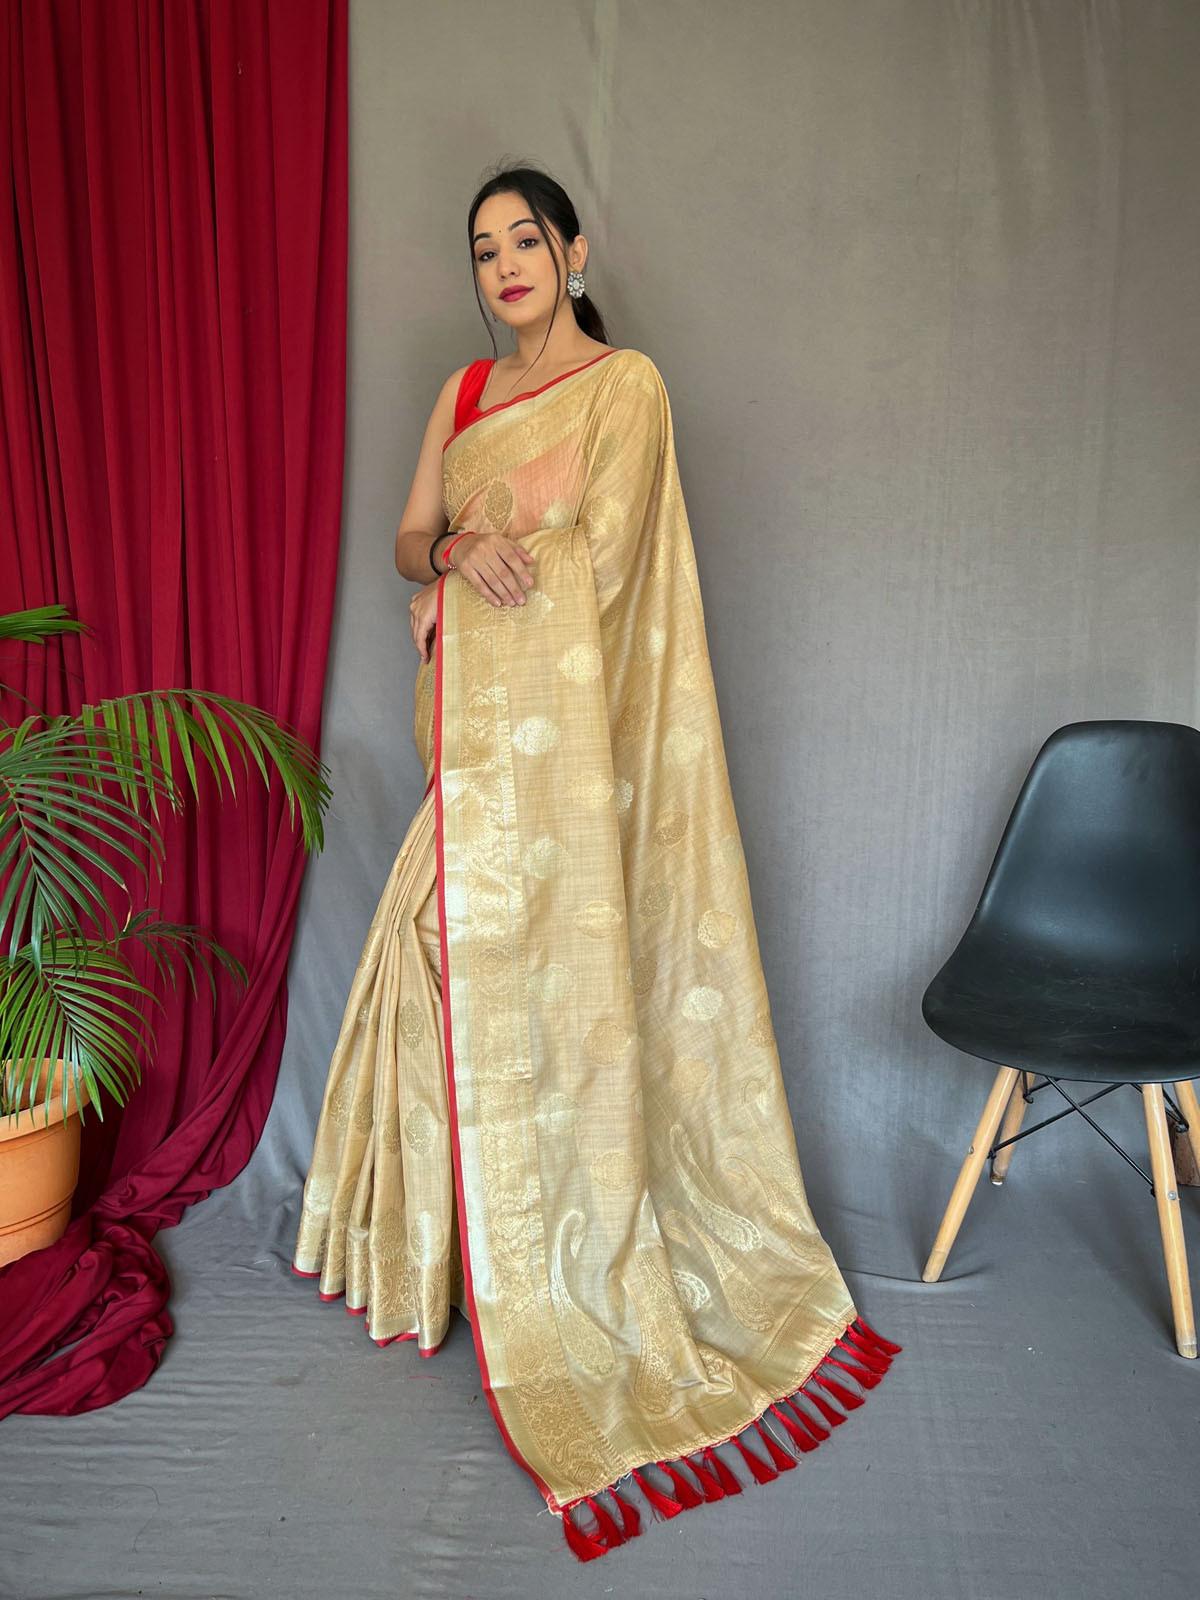 Pure Soft Cotton Saree with Gold Zari Woven & Rich Pallu - Cream